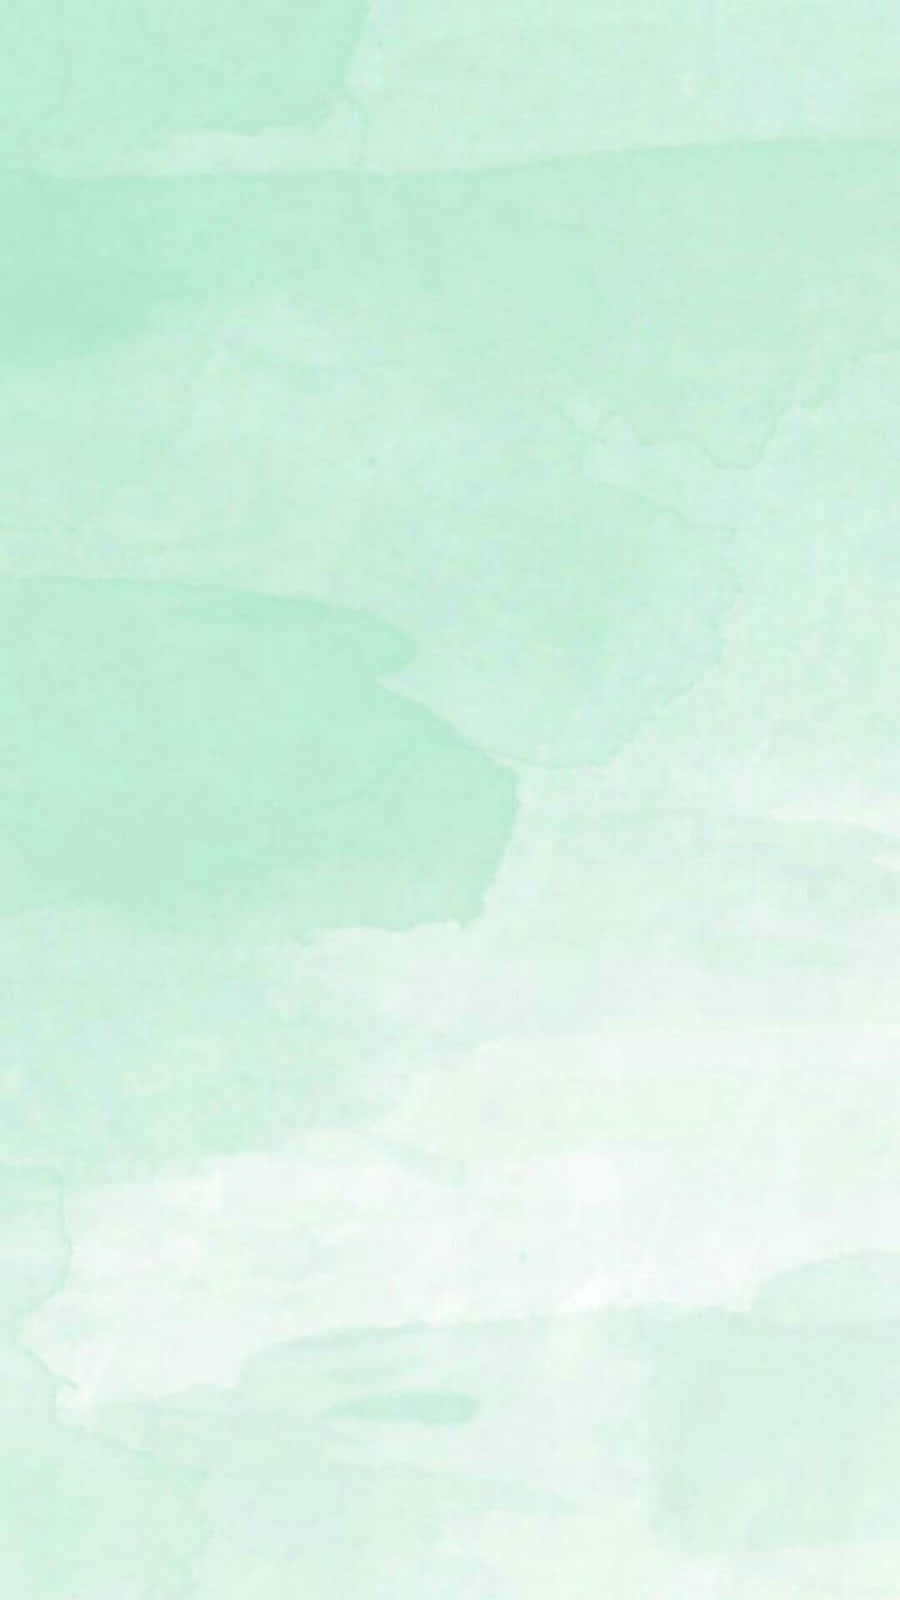 Einezarte Pastellfarbene Minzgrün-tapete Mit Einer Weichen, Beruhigenden Textur. Wallpaper